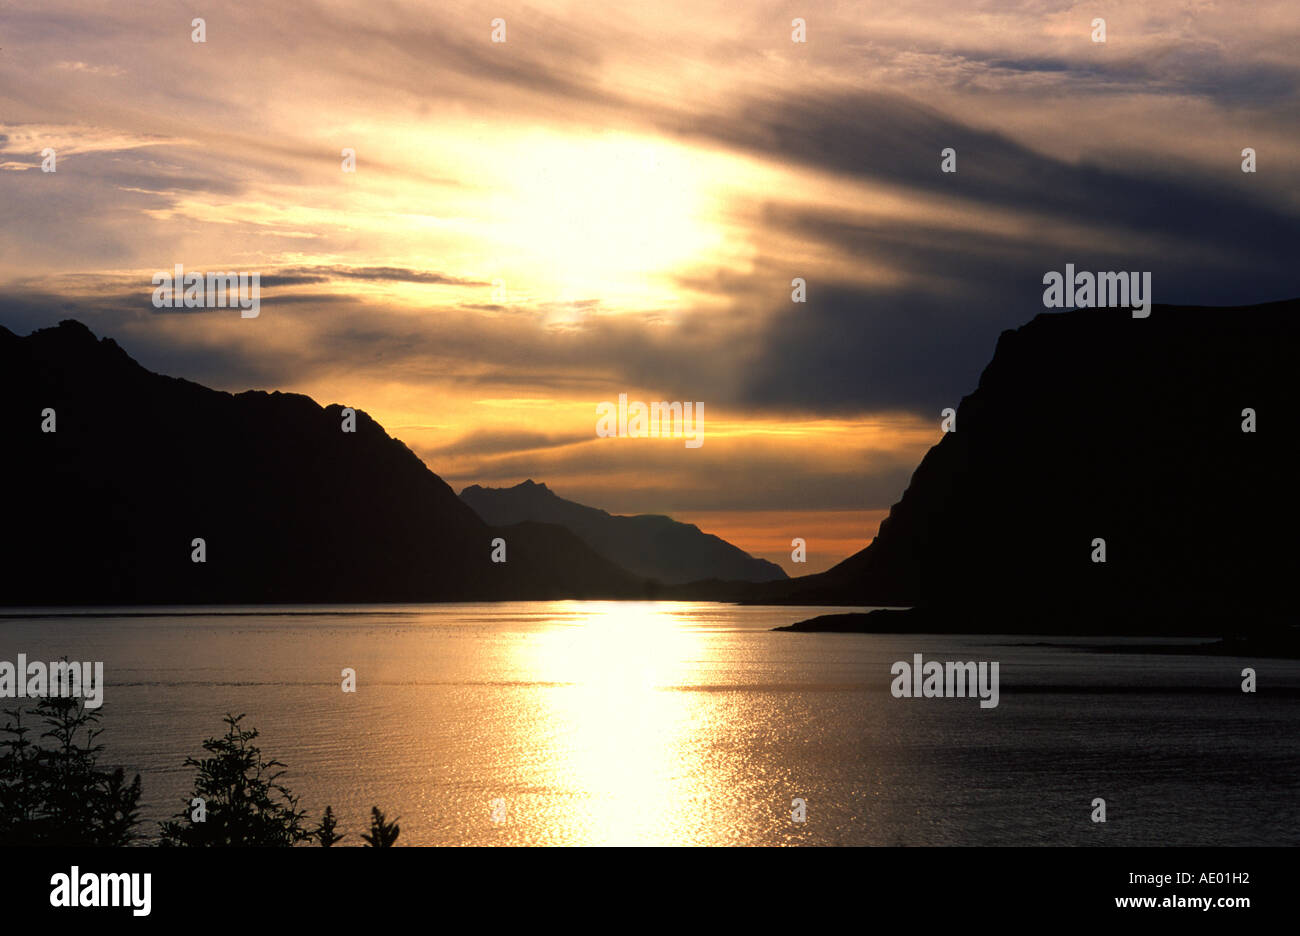 Mitternachtssonne und Berge spiegeln sich im Fjord noorway Foto Stock